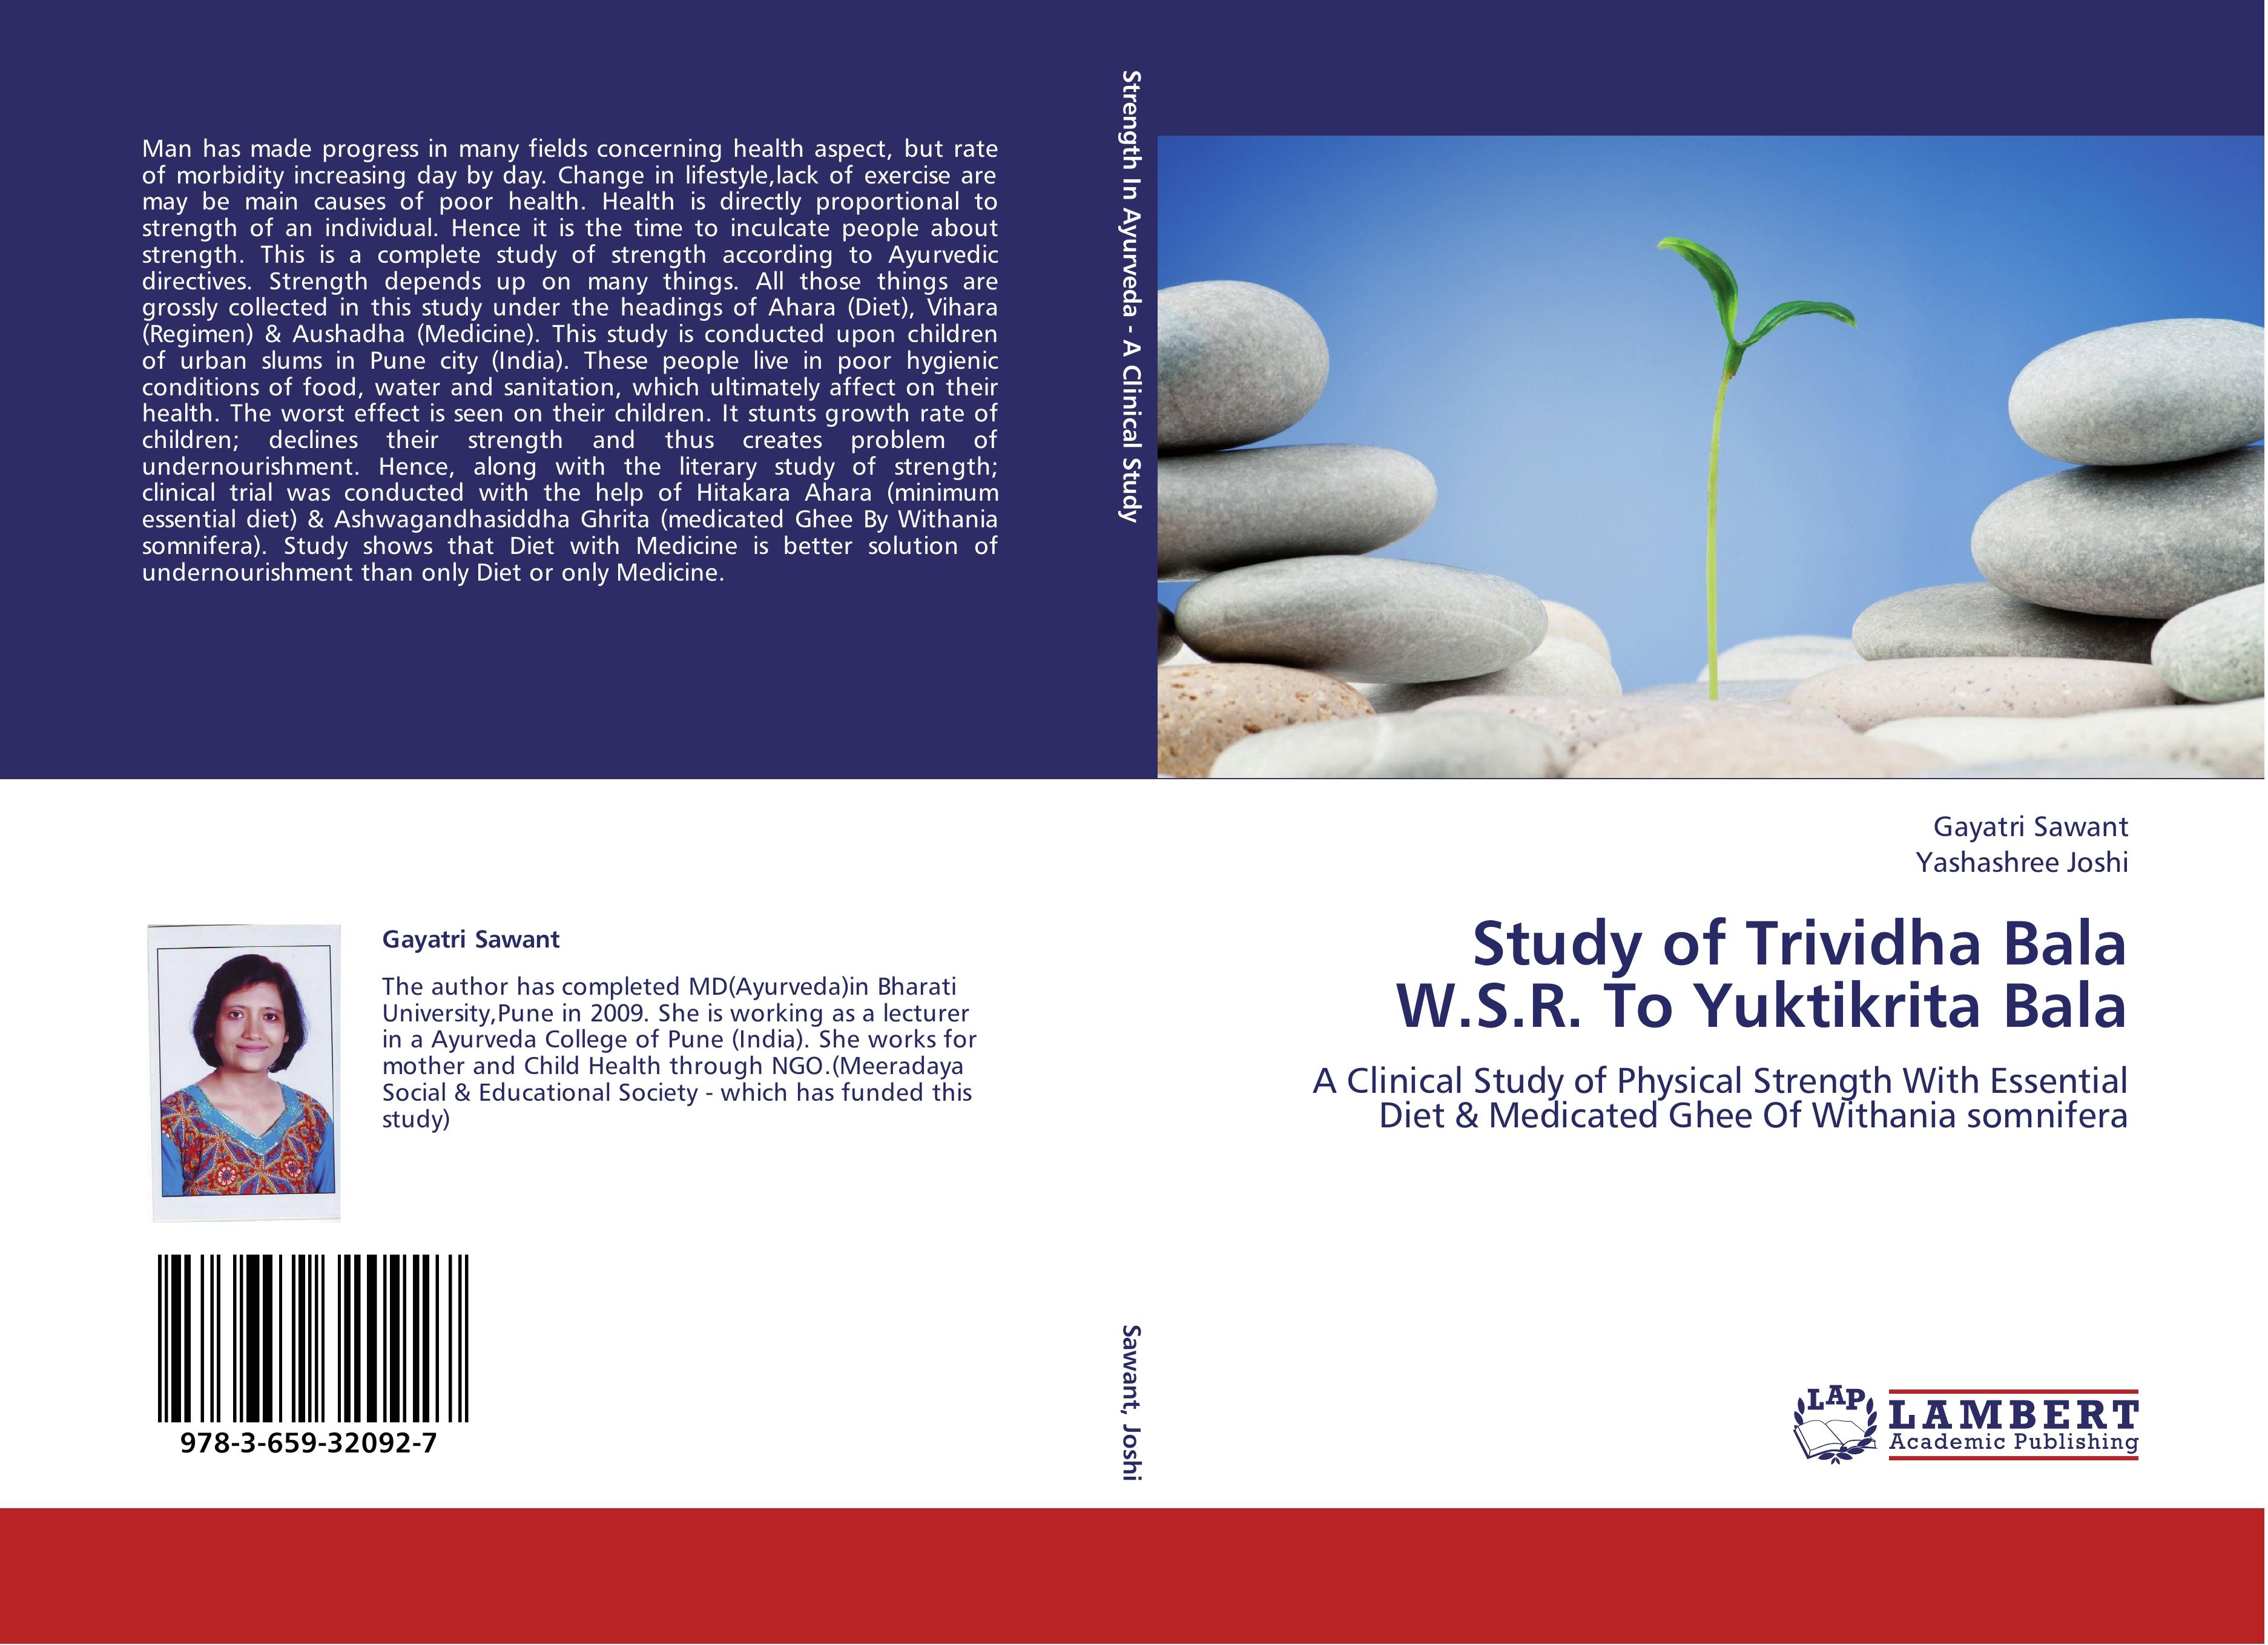 Study of Trividha Bala W.S.R. To Yuktikrita Bala - Gayatri Sawant Yashashree Joshi